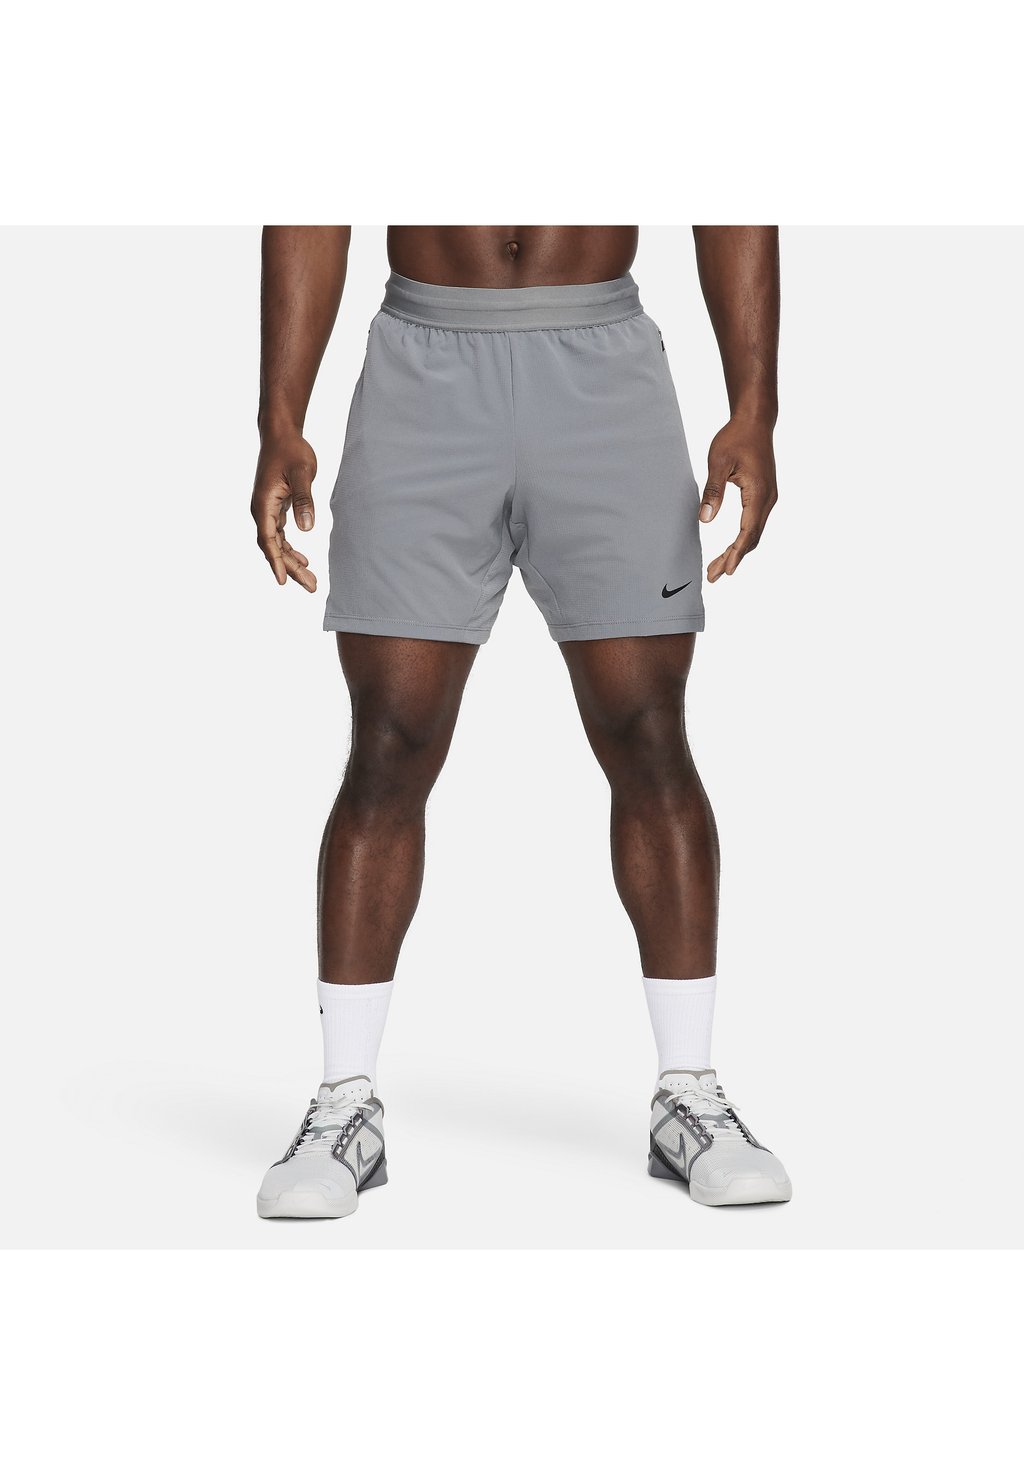 Спортивные шорты Nike, дымчато-серый черный черный